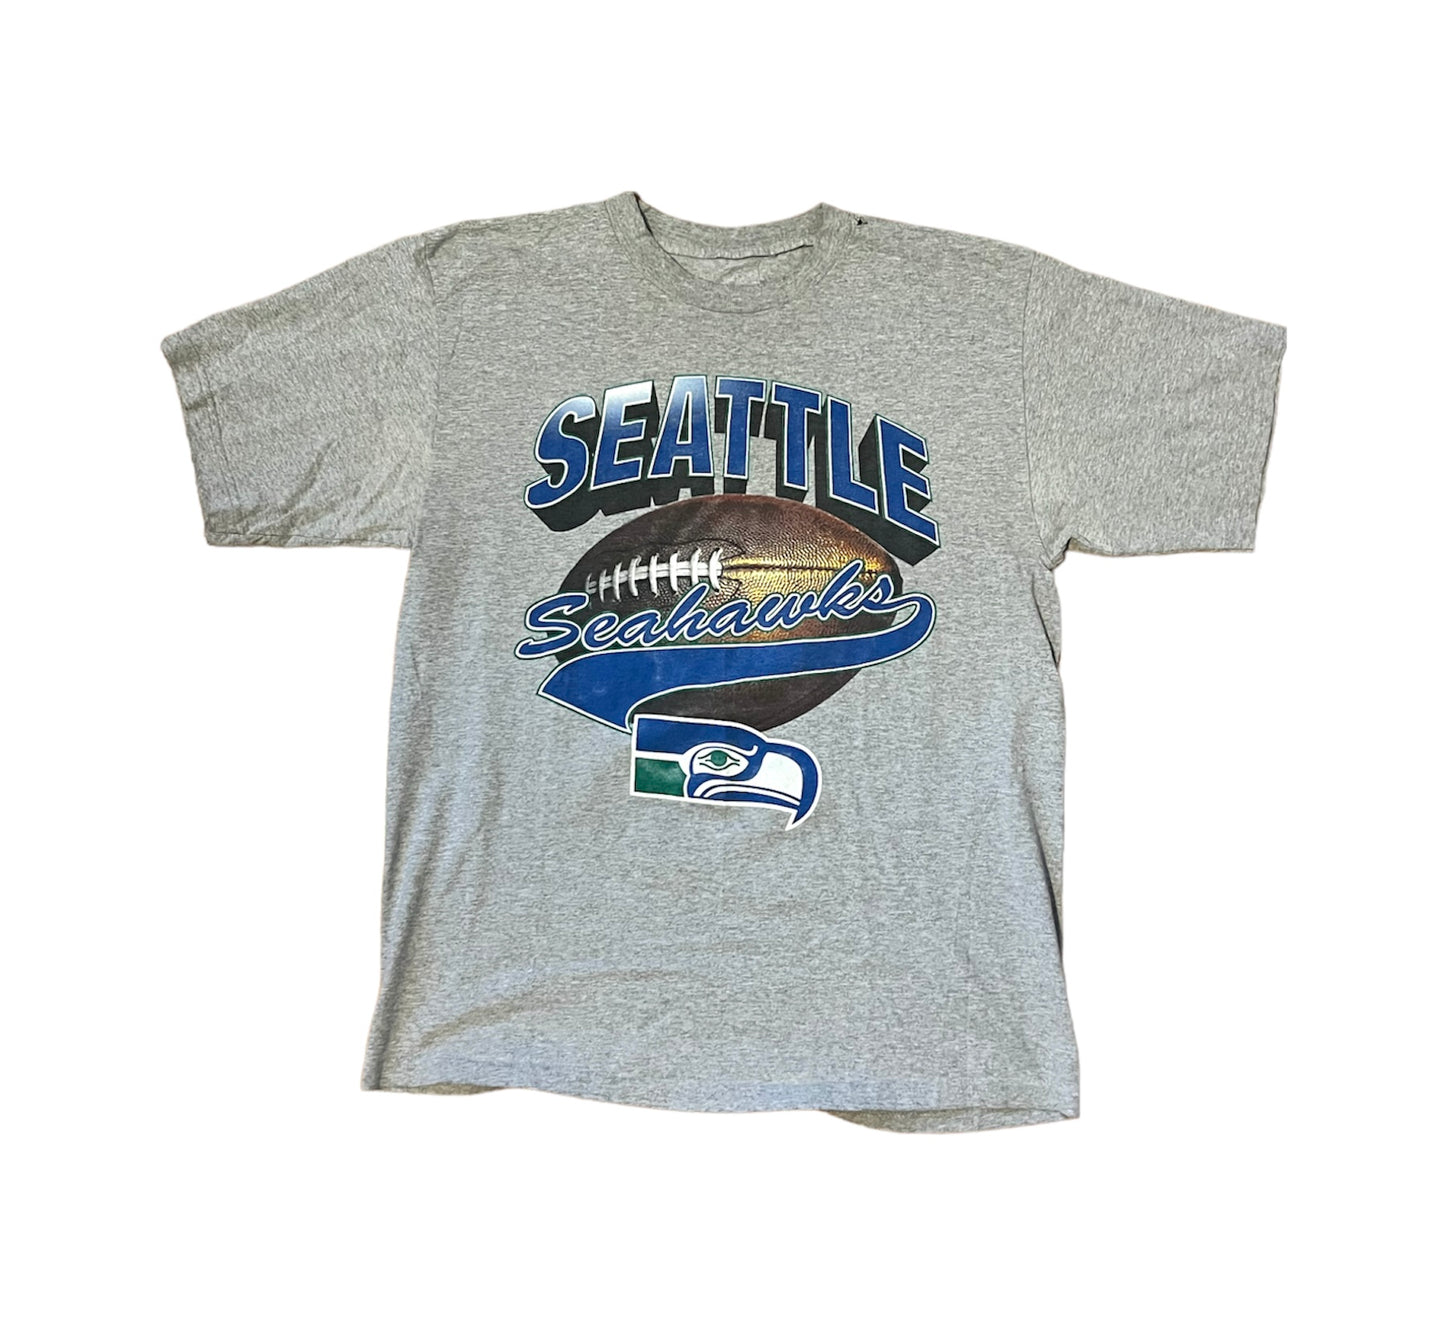 Vintage 90's Seattle Seahawks Tee